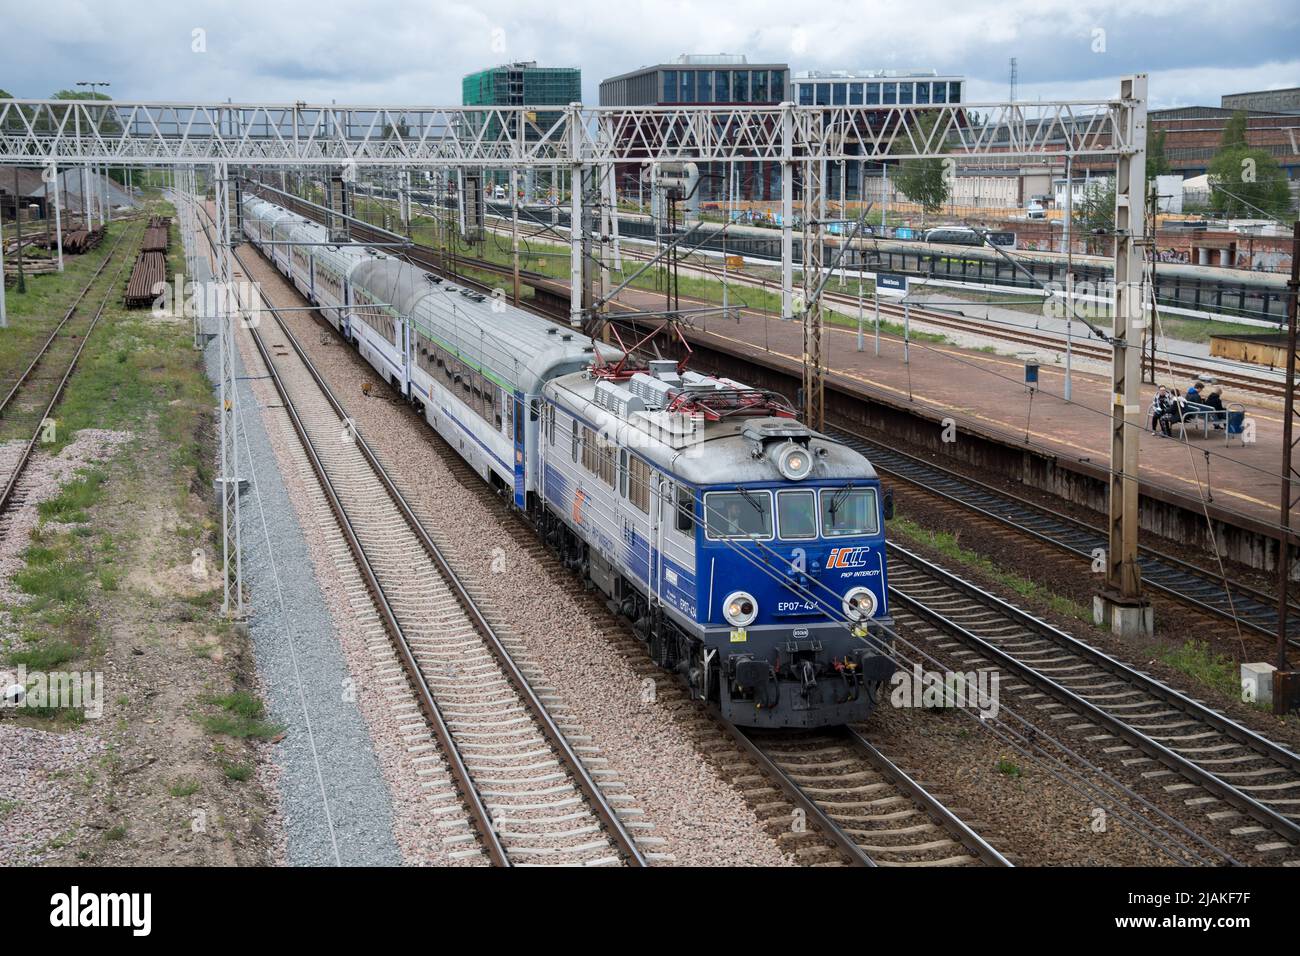 Train in Gdansk, Poland © Wojciech Strozyk / Alamy Stock Photo Stock Photo